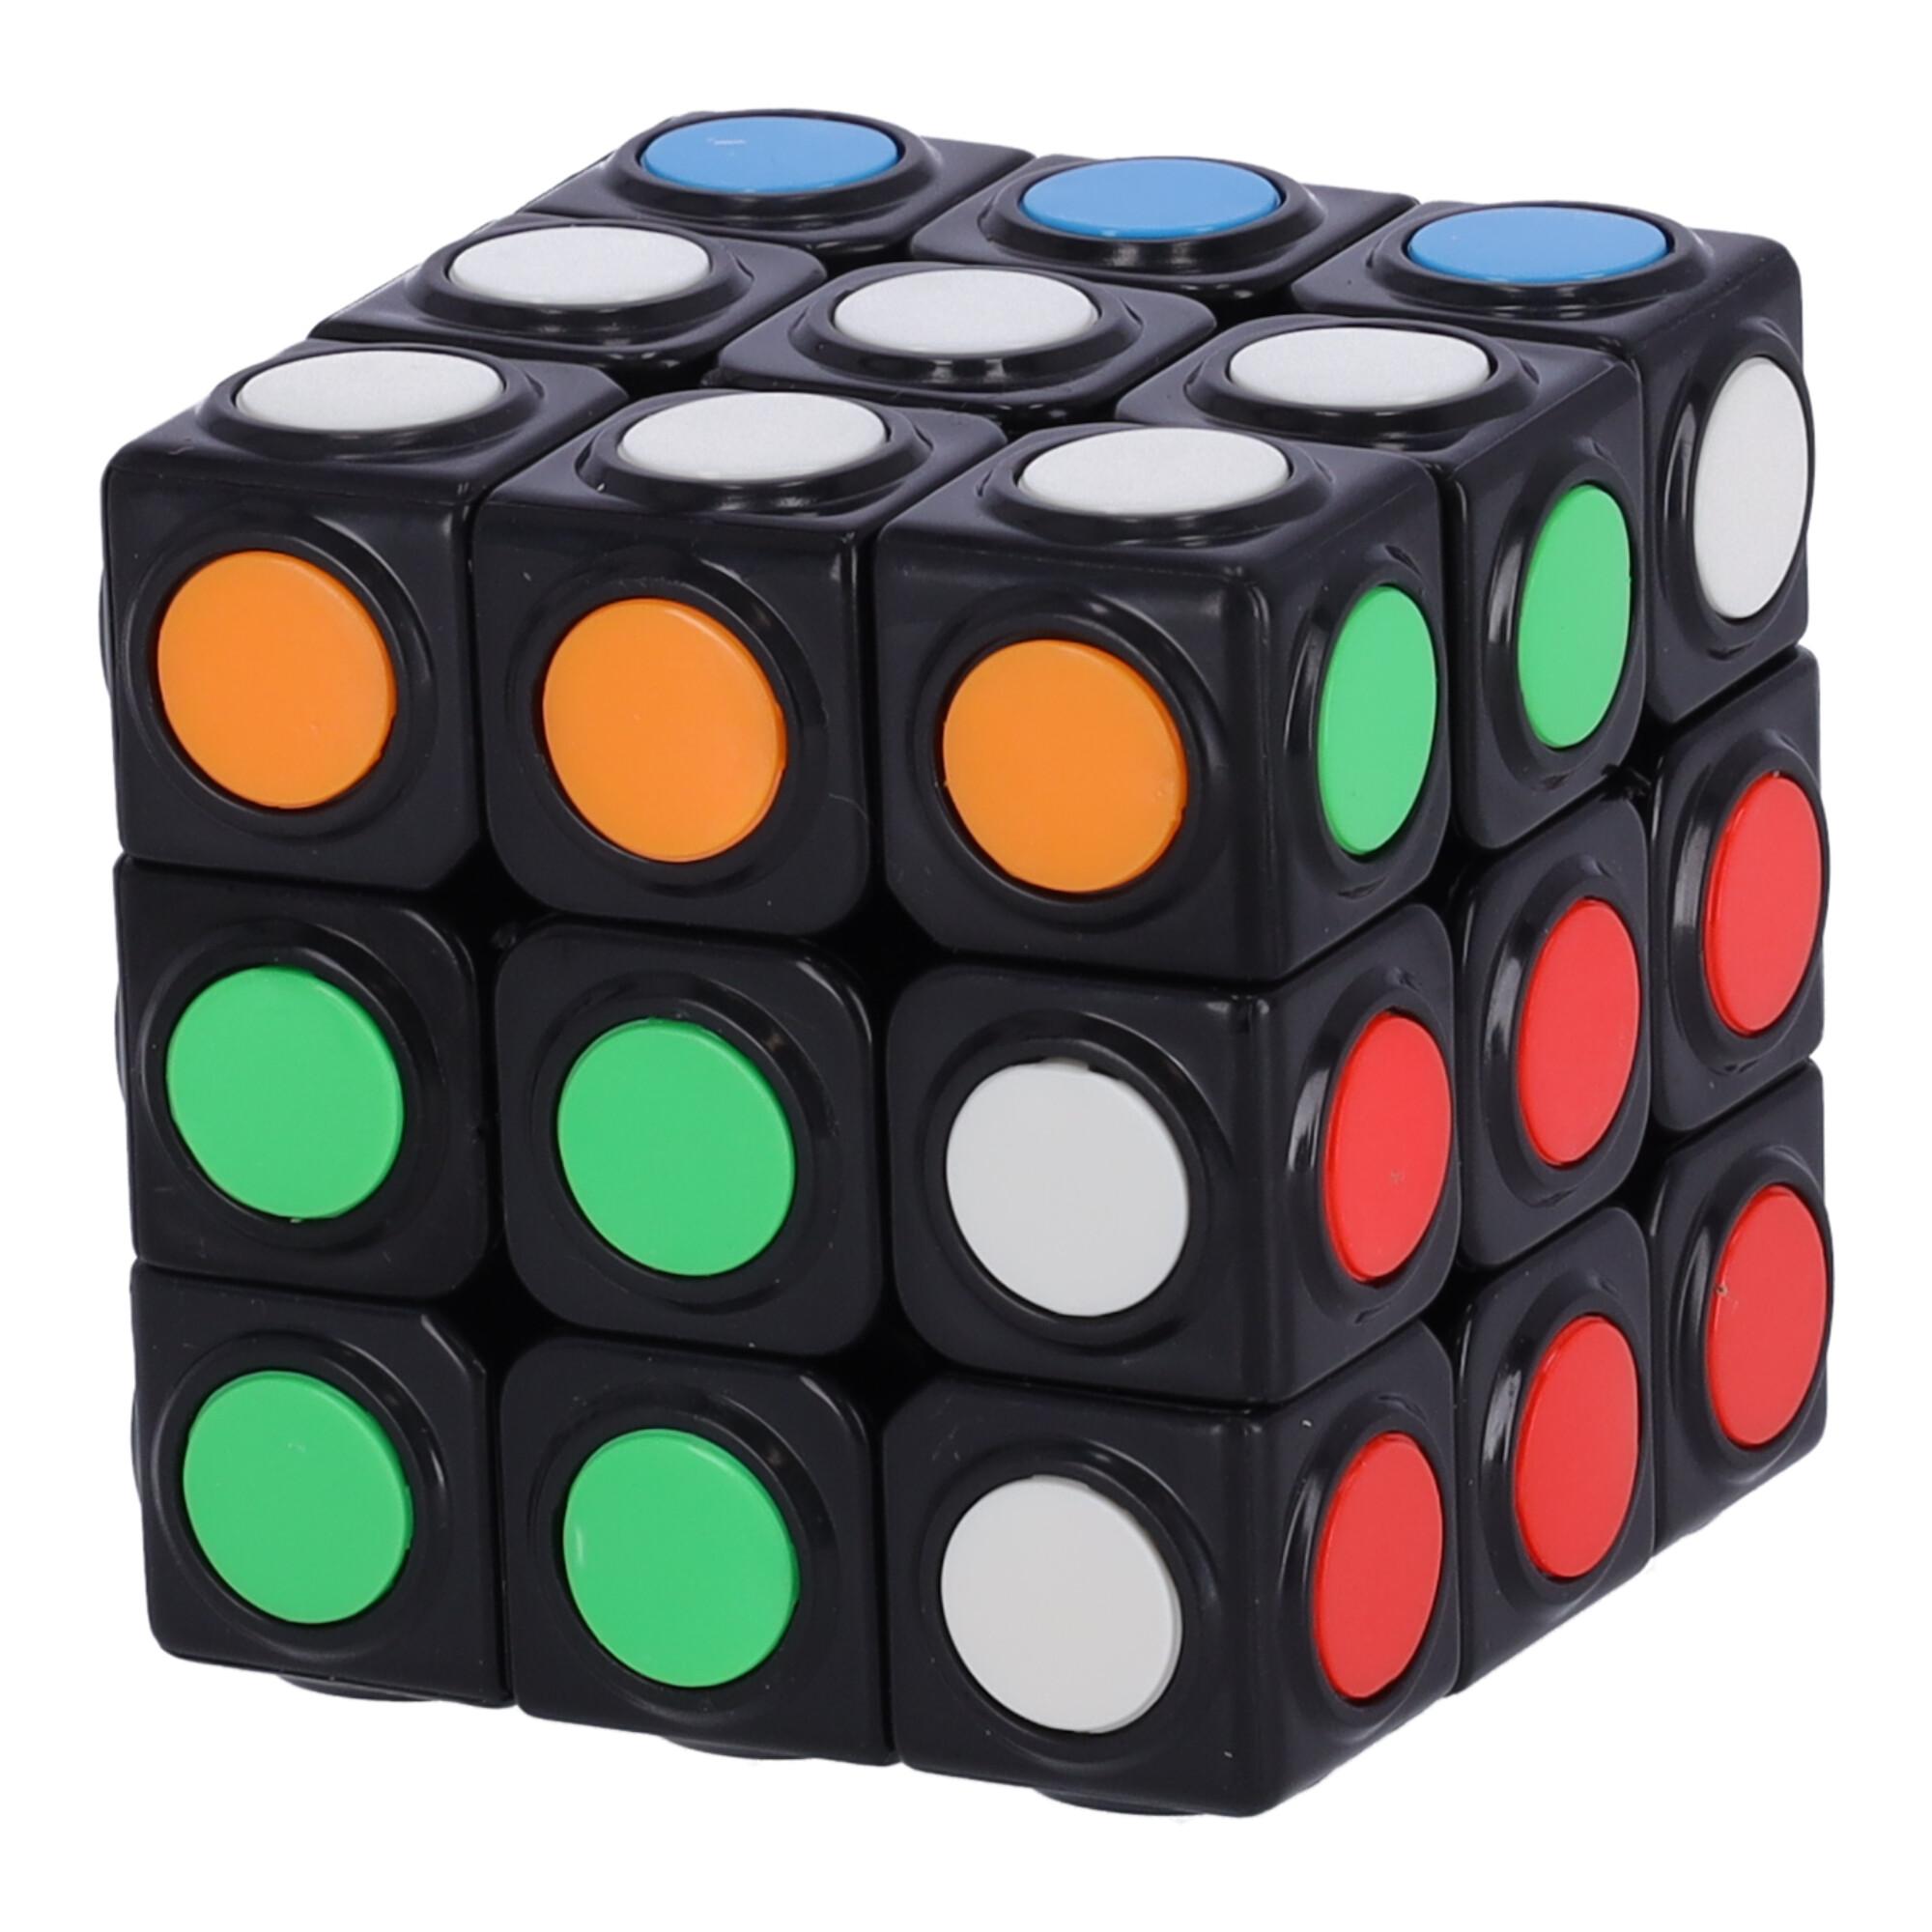 Nowoczesna układanka, kostka logiczna, Kostka Rubika - typ VII